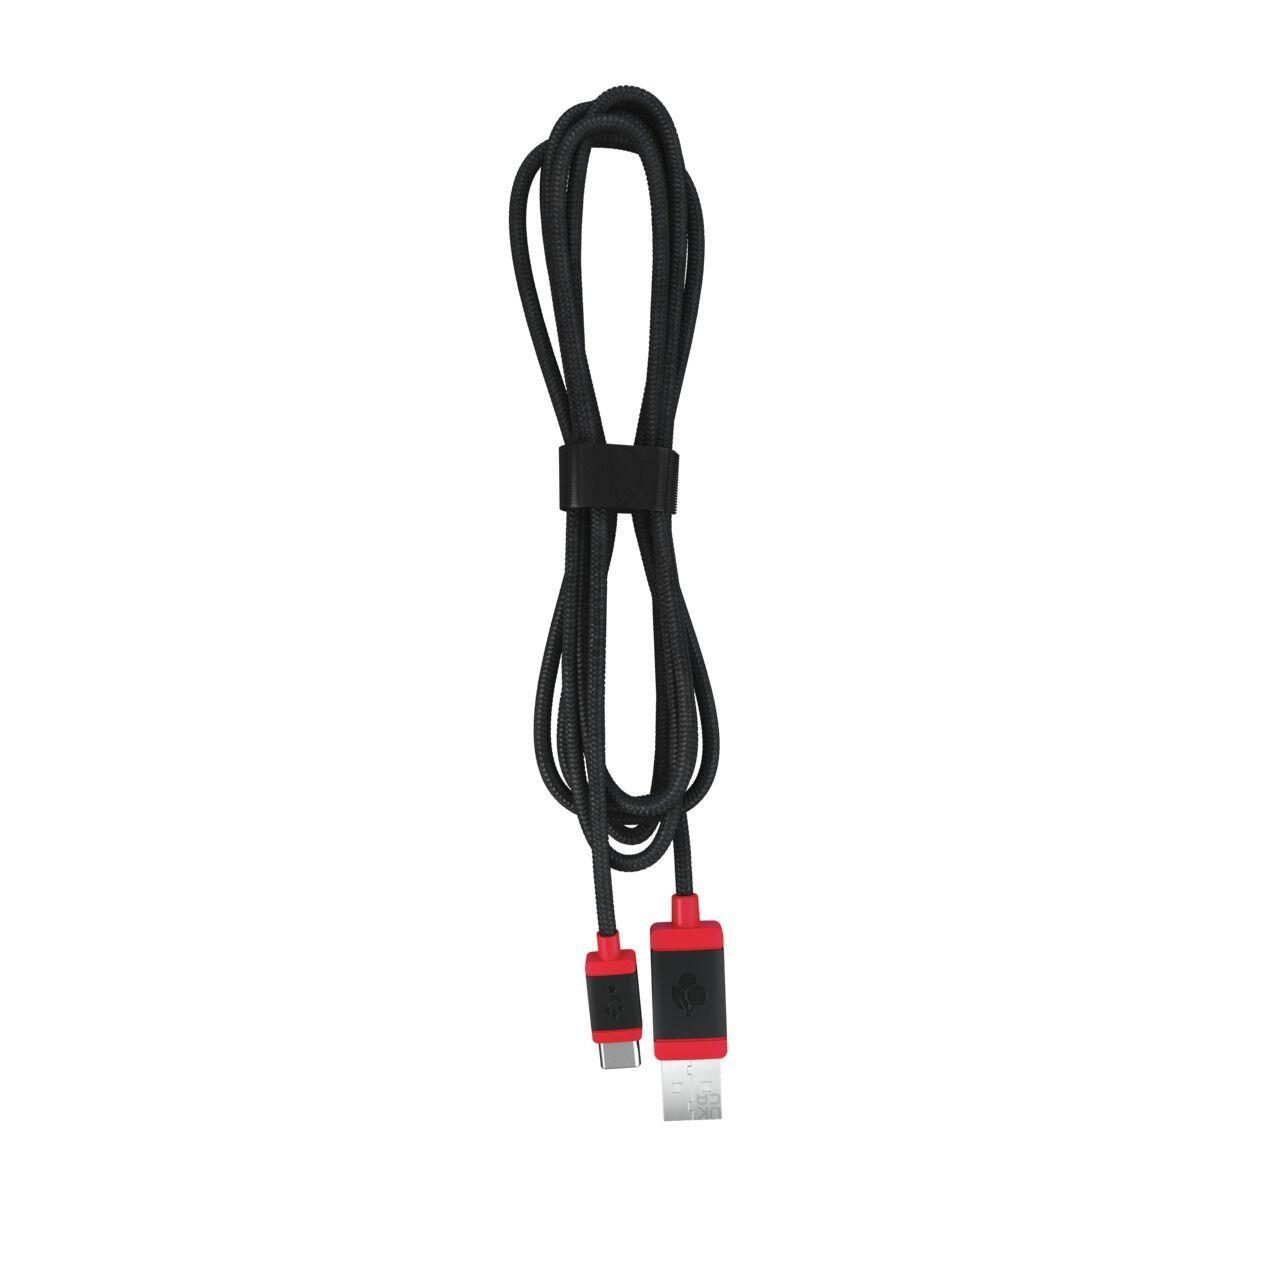 CHERRY USB Kabel 1.5 - Hochwertiges USB-C auf USB-A Kabel von Cherry